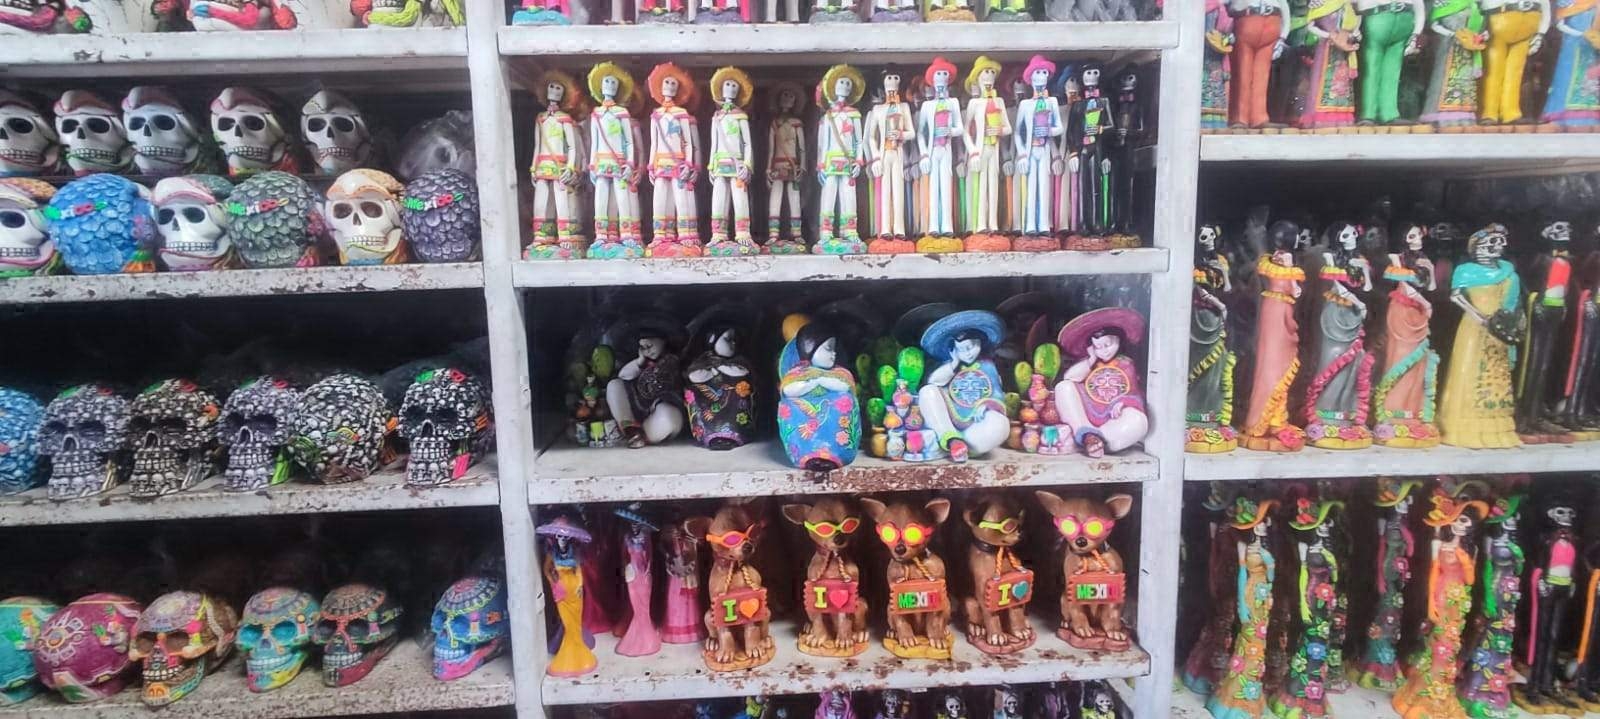 'Invasión' de mercancía China pone en riesgo a artesanos mexicanos en Playa del Carmen